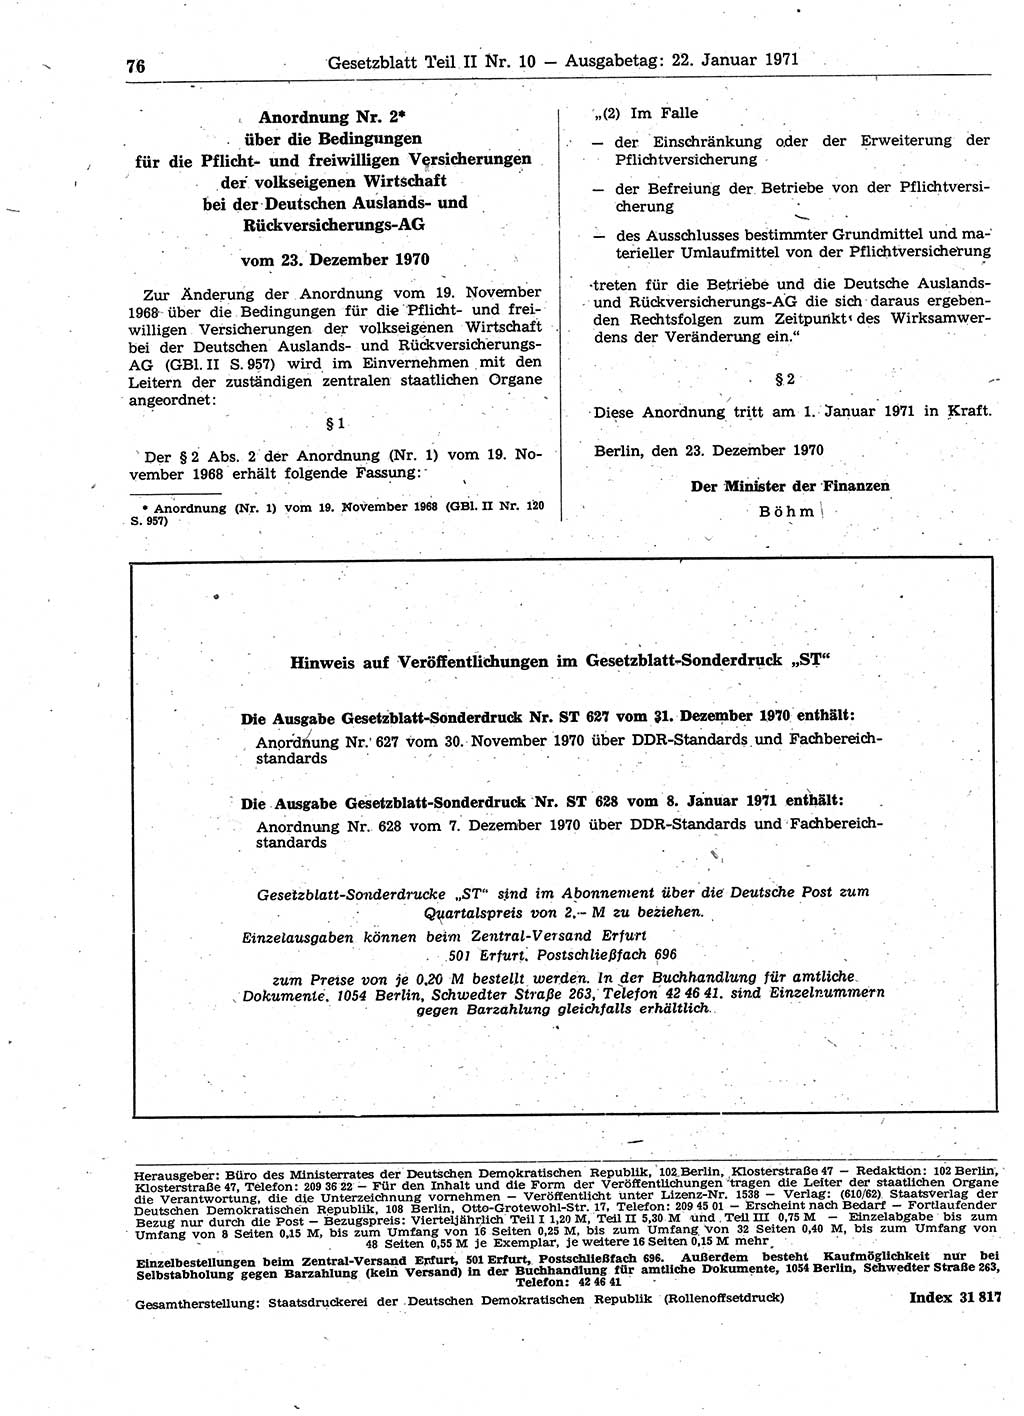 Gesetzblatt (GBl.) der Deutschen Demokratischen Republik (DDR) Teil ⅠⅠ 1971, Seite 76 (GBl. DDR ⅠⅠ 1971, S. 76)